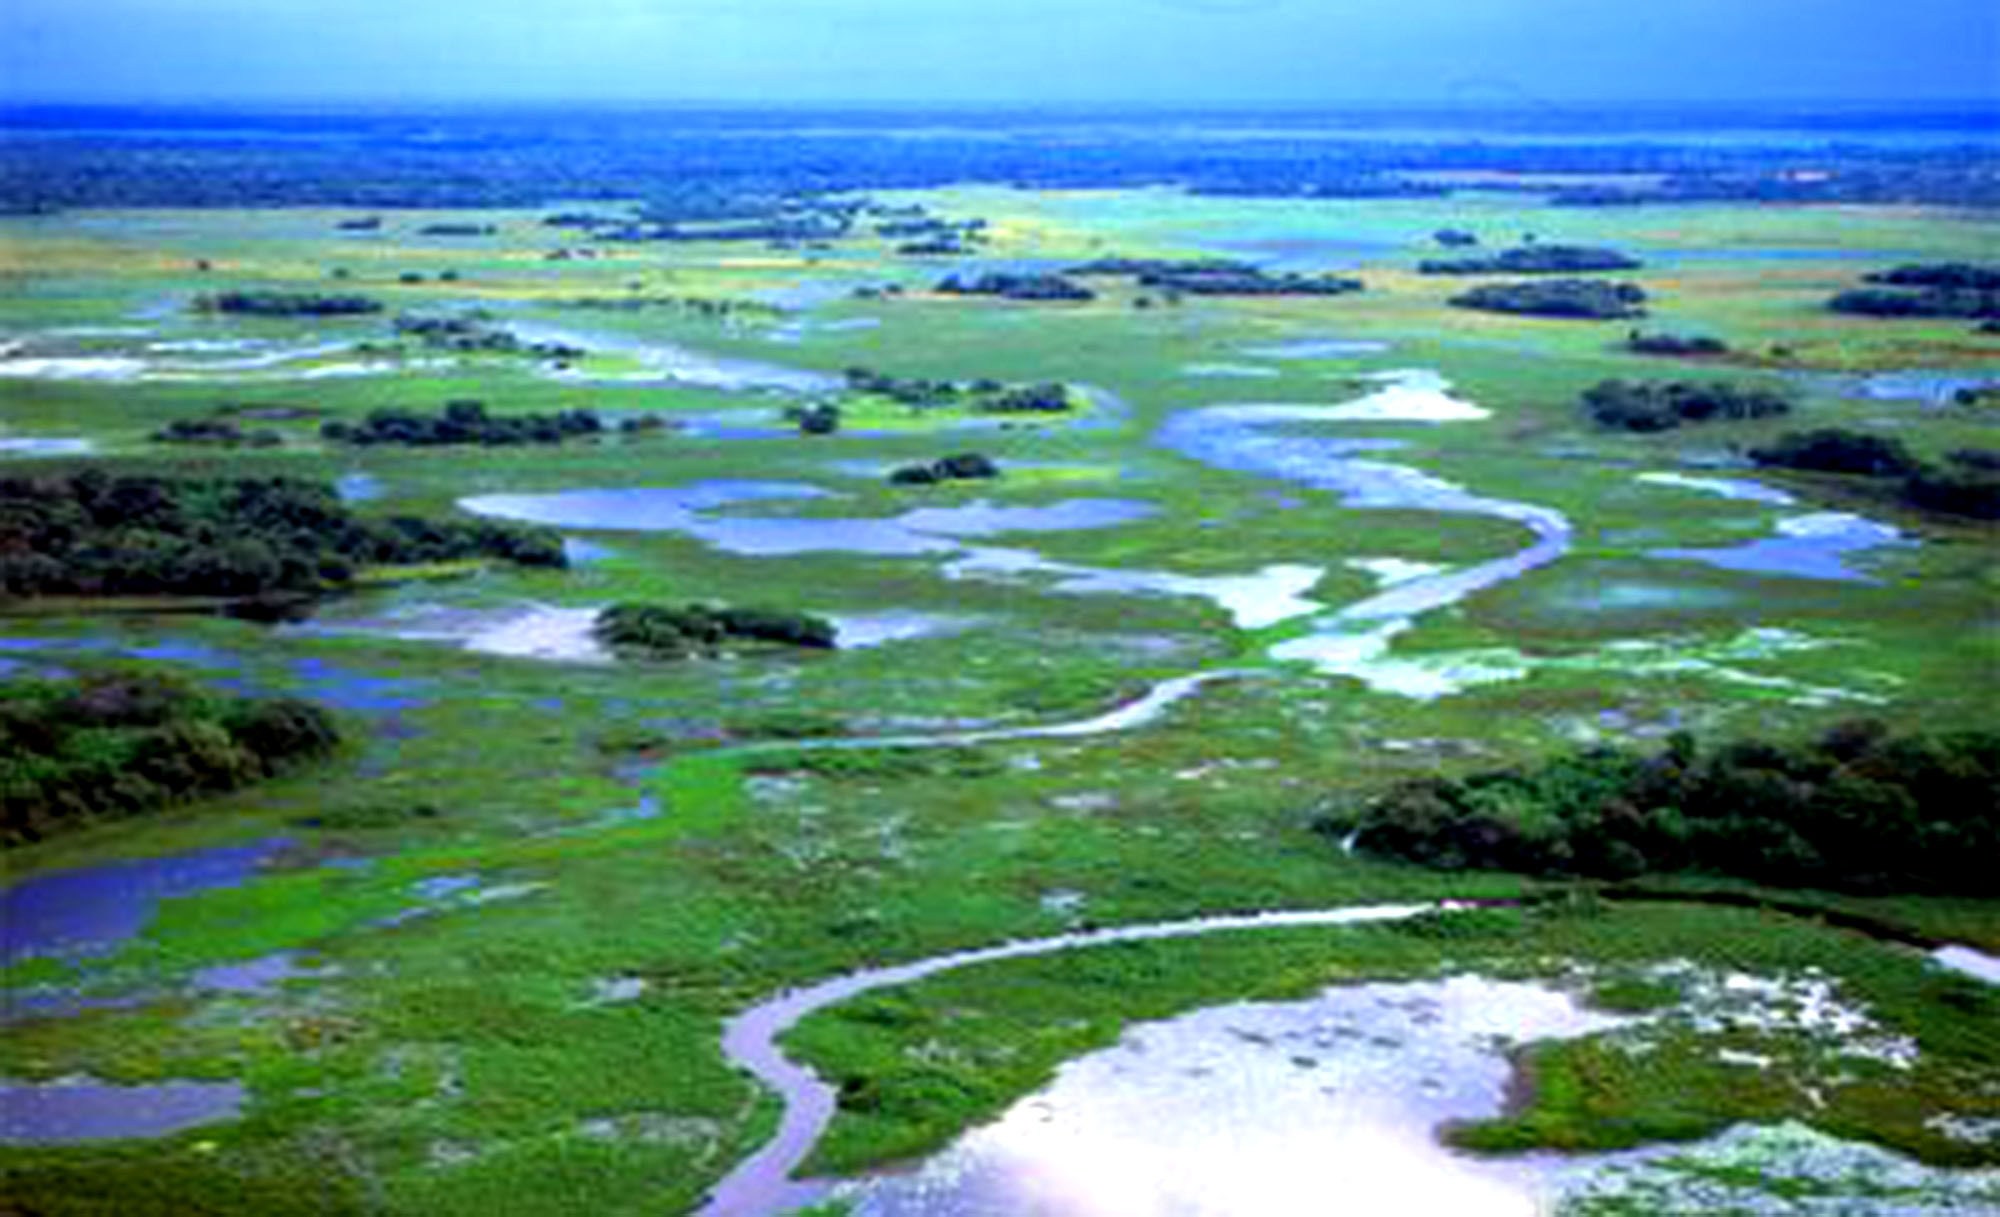 As normas jurídicas têm que ser muito claras, alerta ministro sobre Pantanal